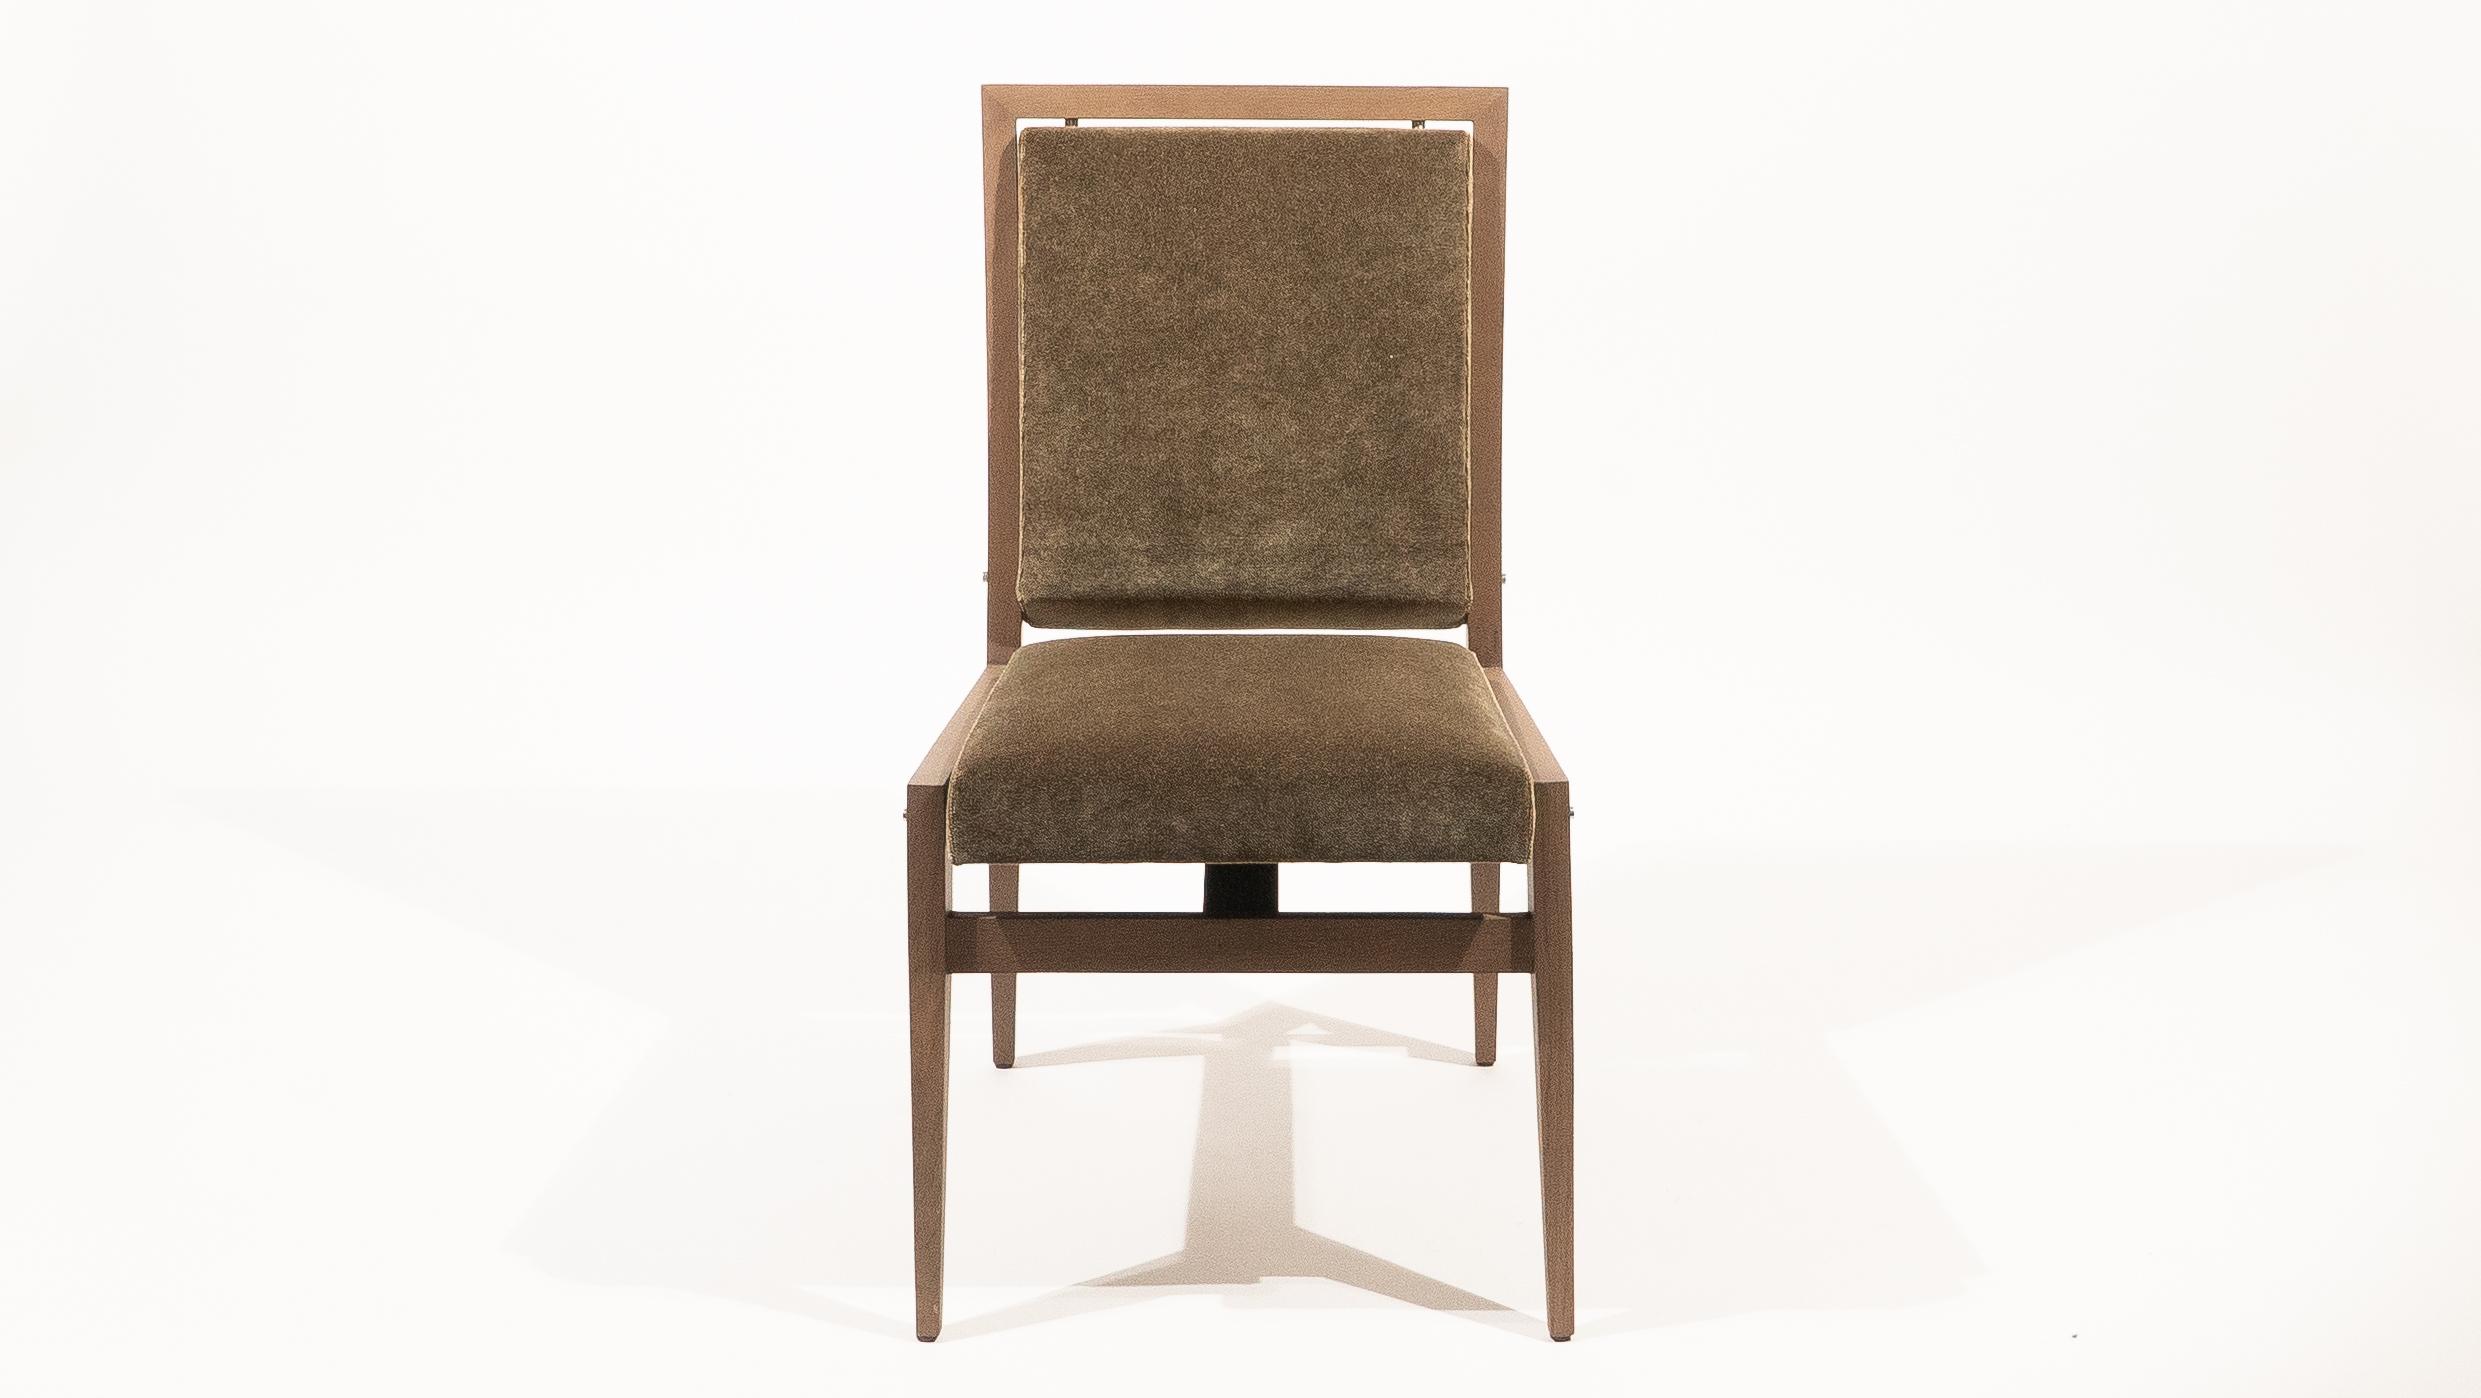 Cette chaise de salle à manger a été conçue par Maxime Old en 1960 pour la mairie de Rouen. L'un des projets les plus emblématiques du designer. La galerie Anne Jacquemin SABLON GALLERY présente une édition contemporaine de la chaise Councill qui se